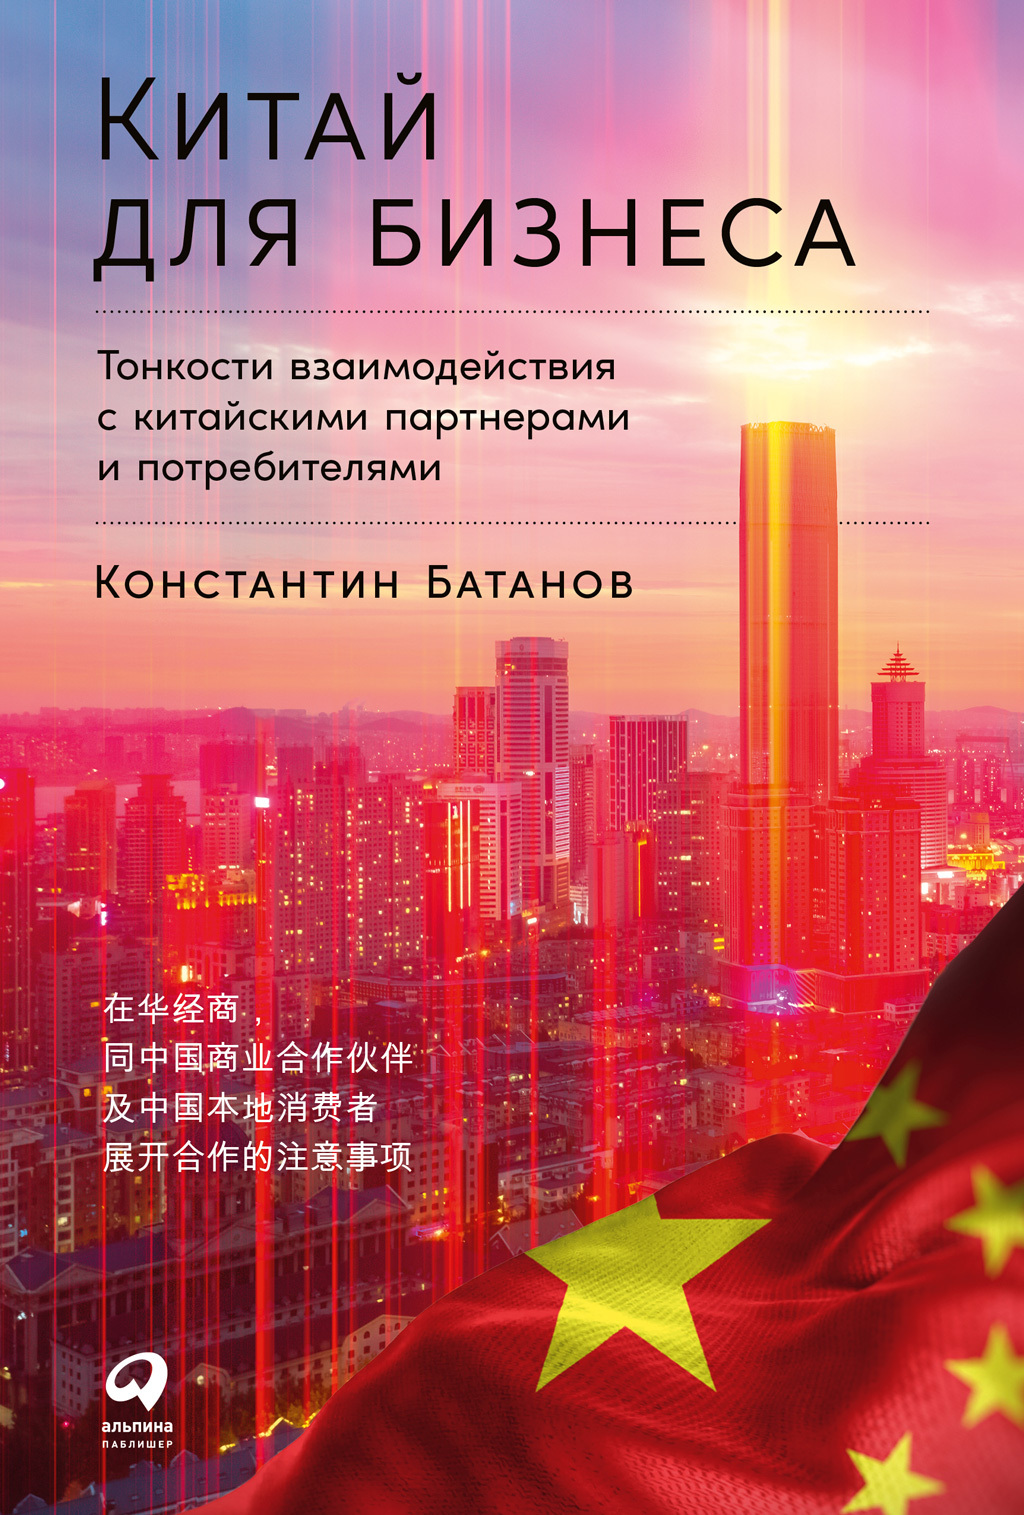 Китай для бизнеса: Тонкости взаимодействия с китайскими партнерами и потребителями - Константин Николаевич Батанов